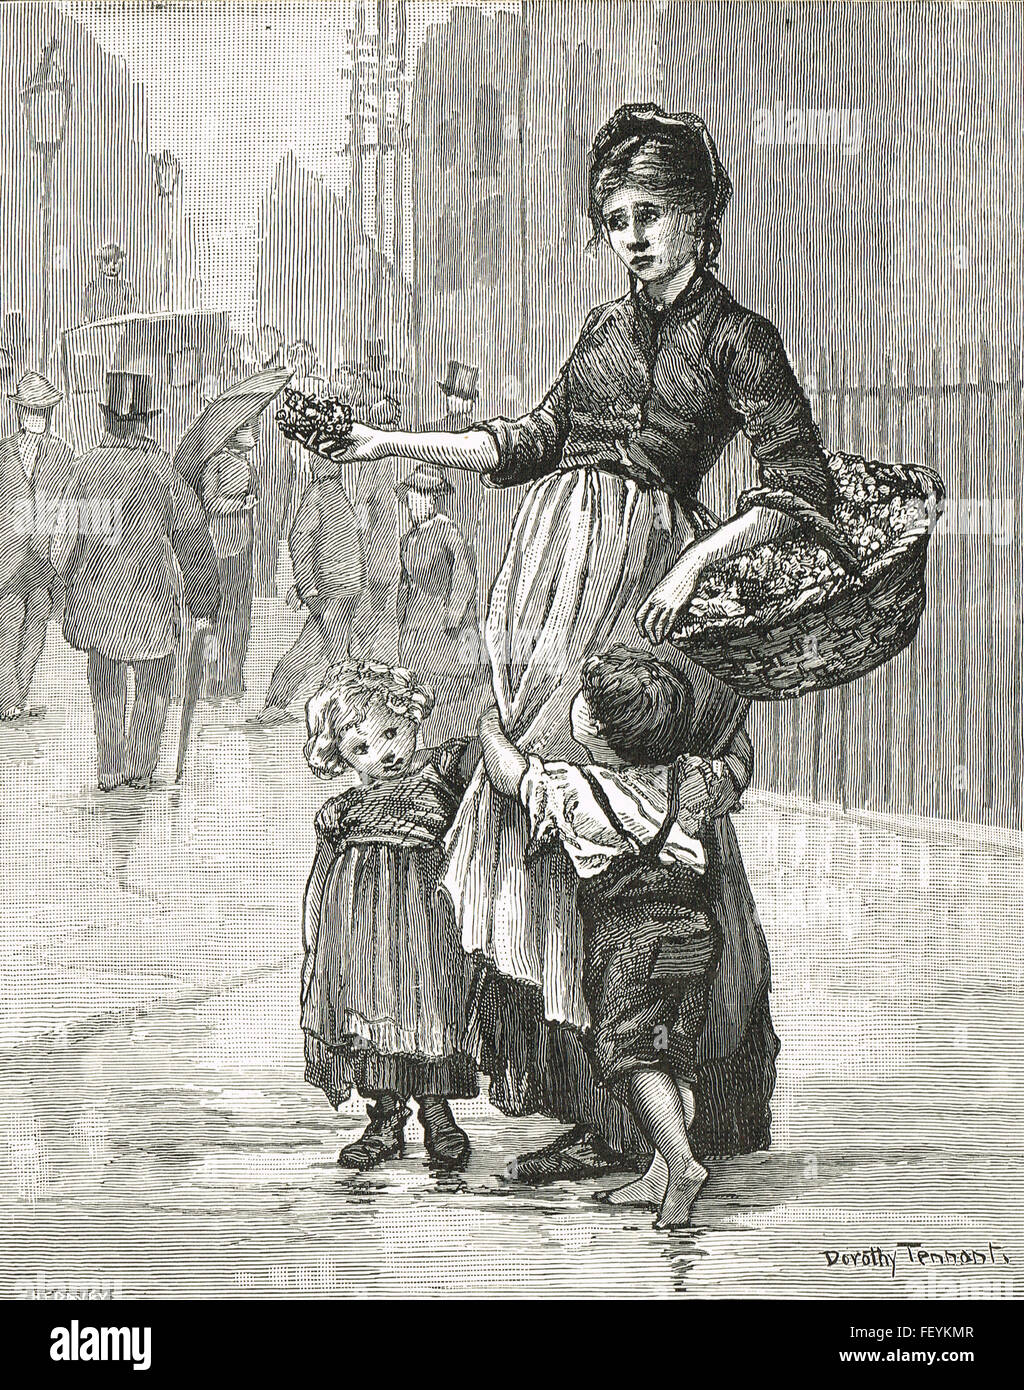 Викторианская эпоха дети бедных арт